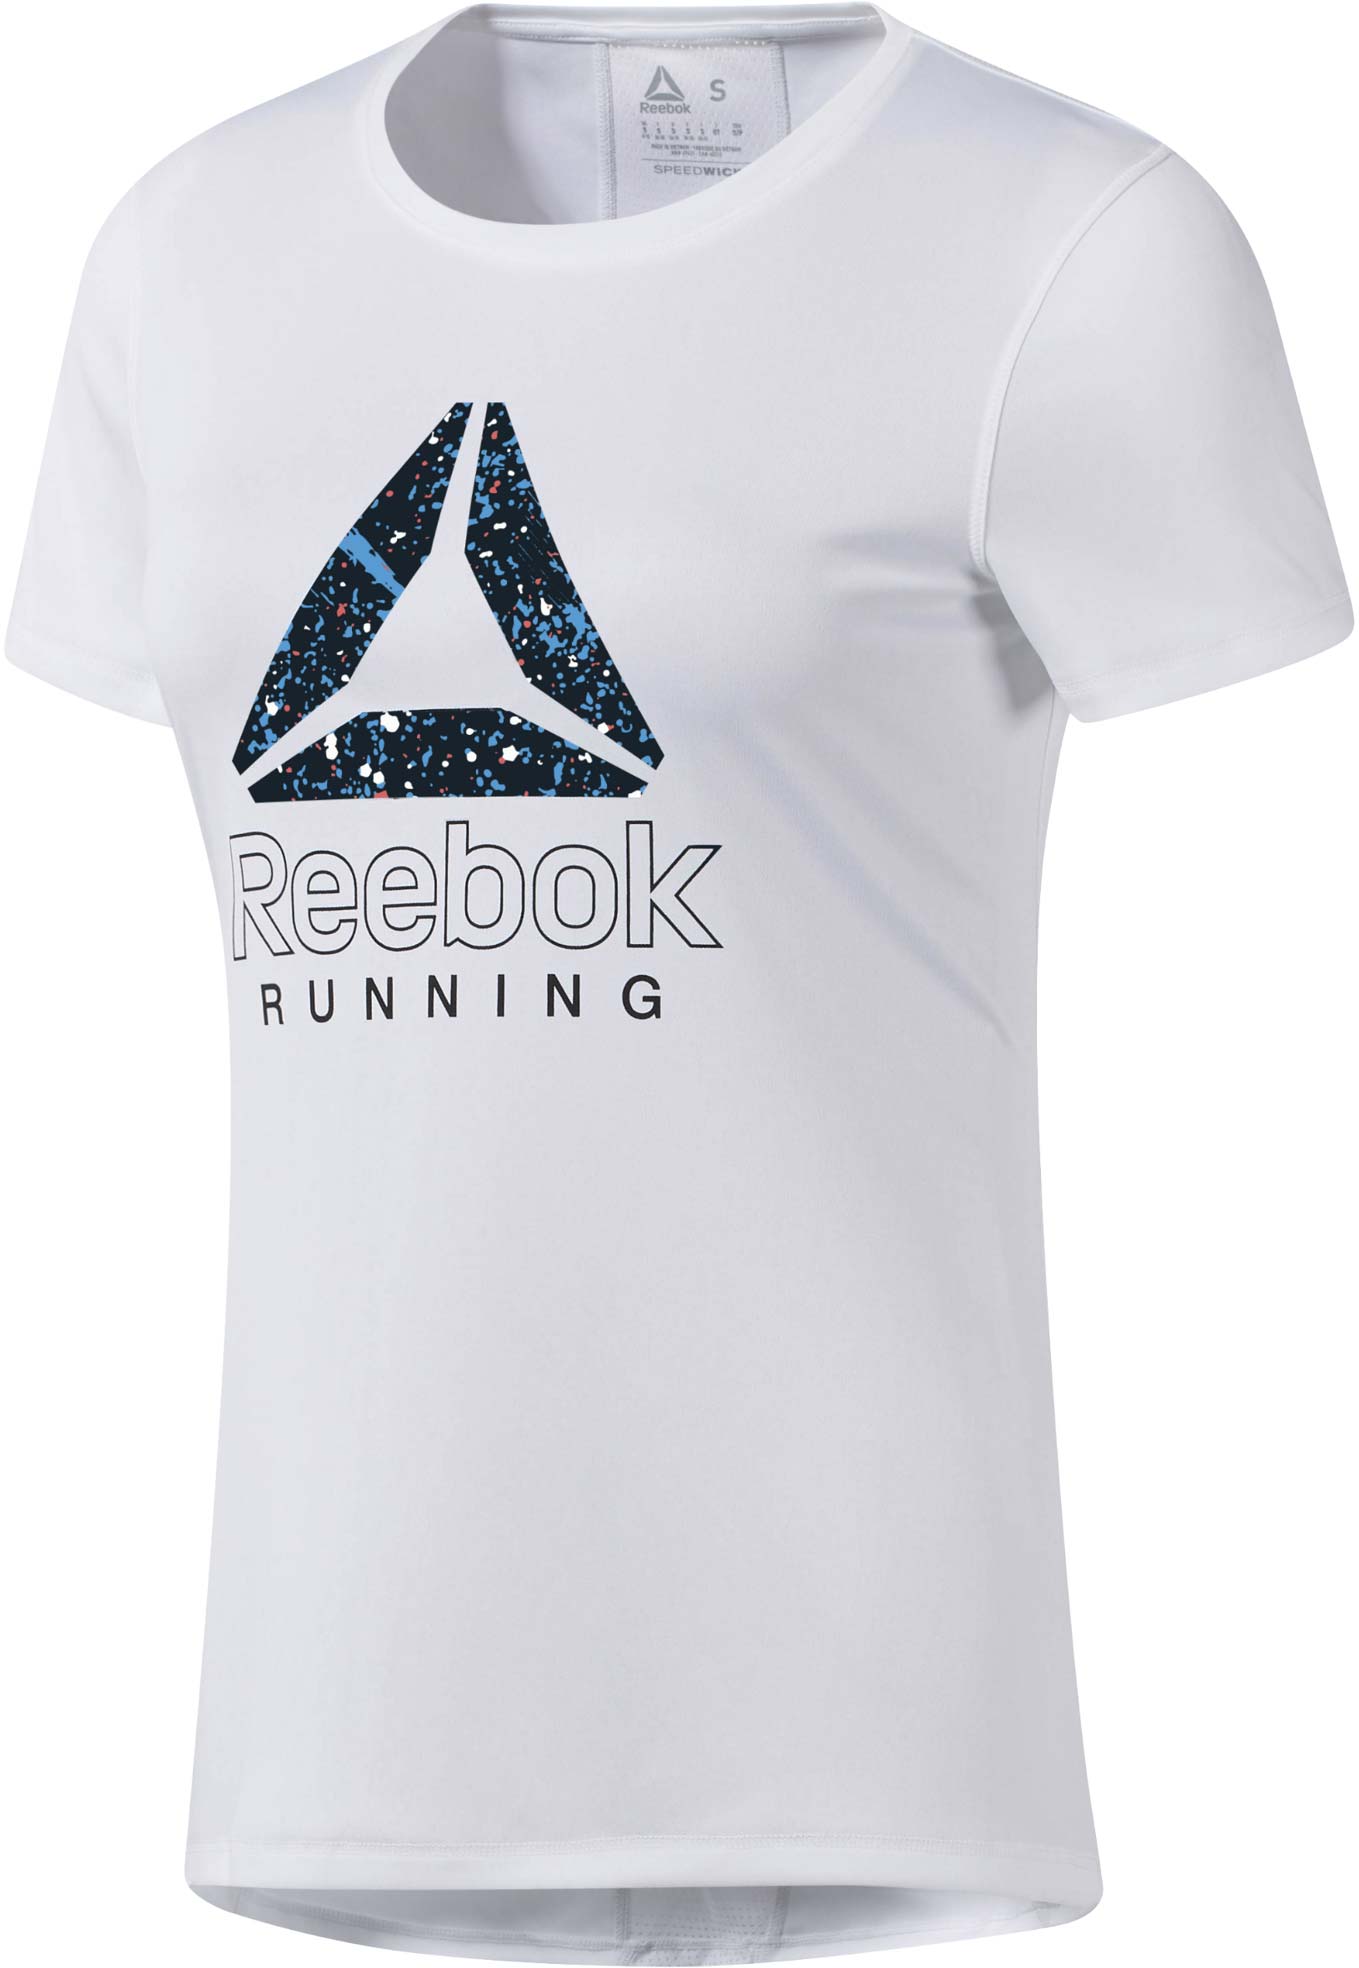 Women's running T-shirt